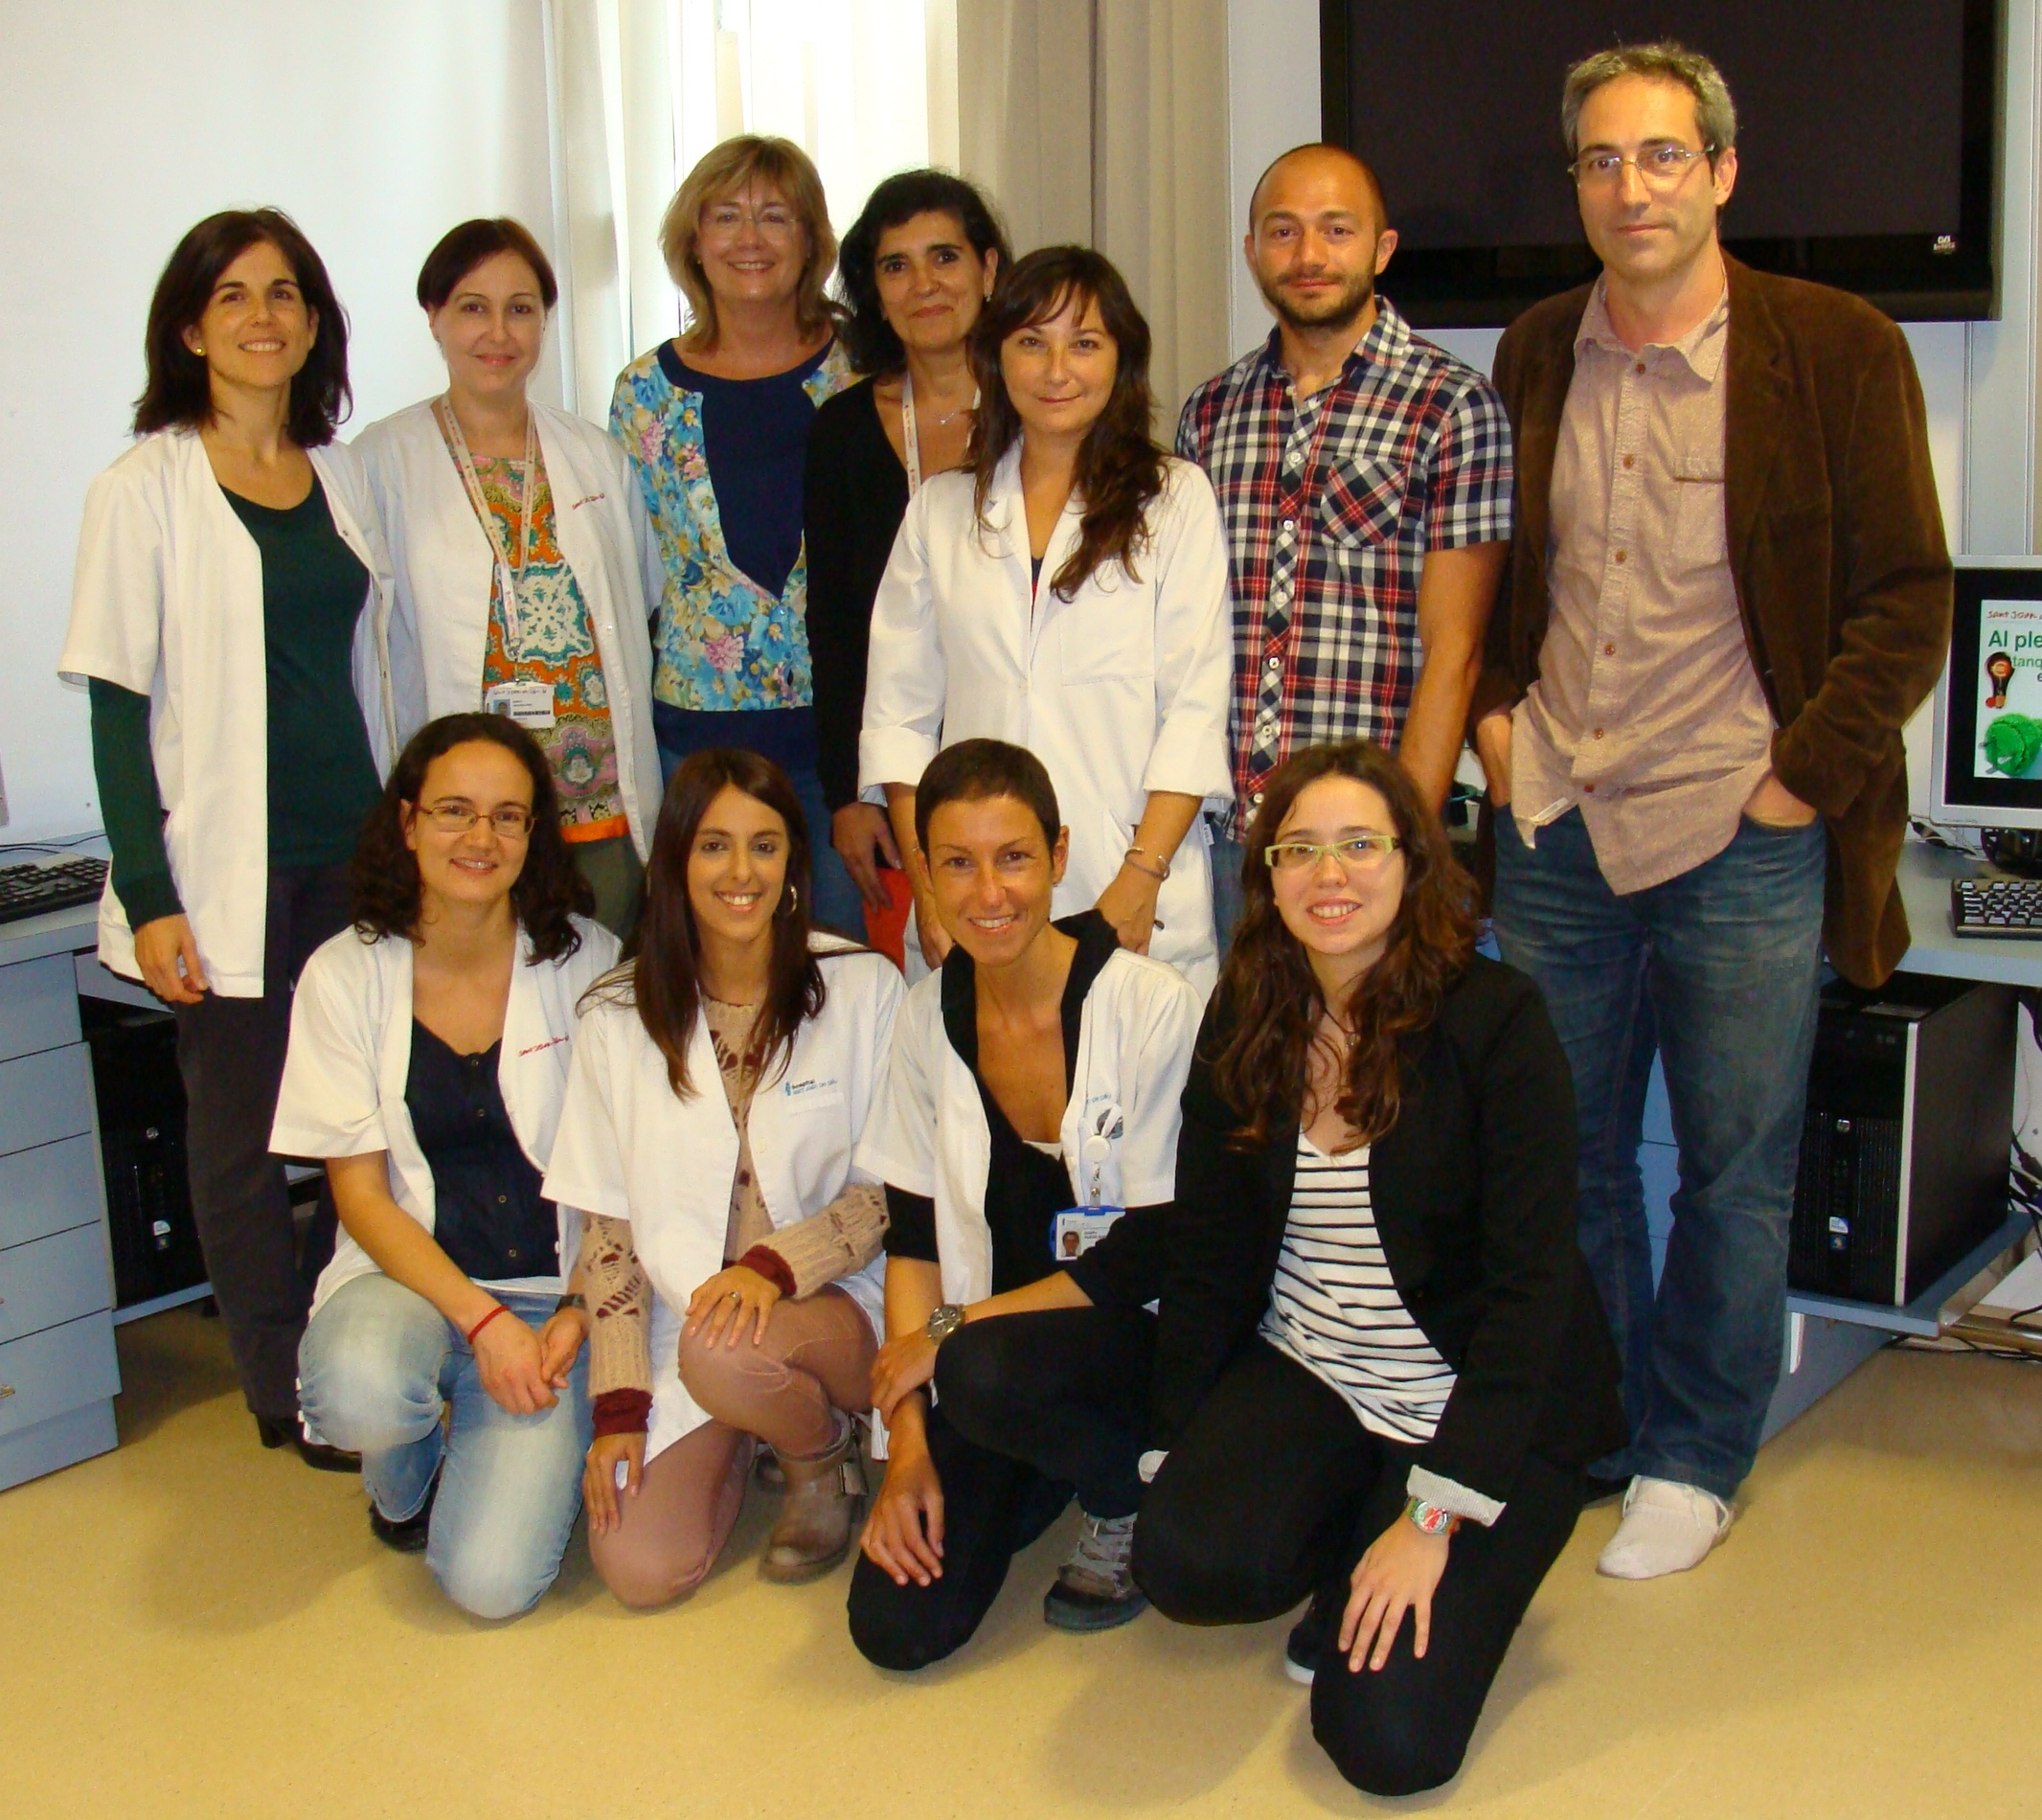 Una imatge de l'equip científic on participen els investigadors Bru Cormand, Claudio Toma, Amaia Hervás, Conchita Arenas i Alba Tristán, entre altres experts.